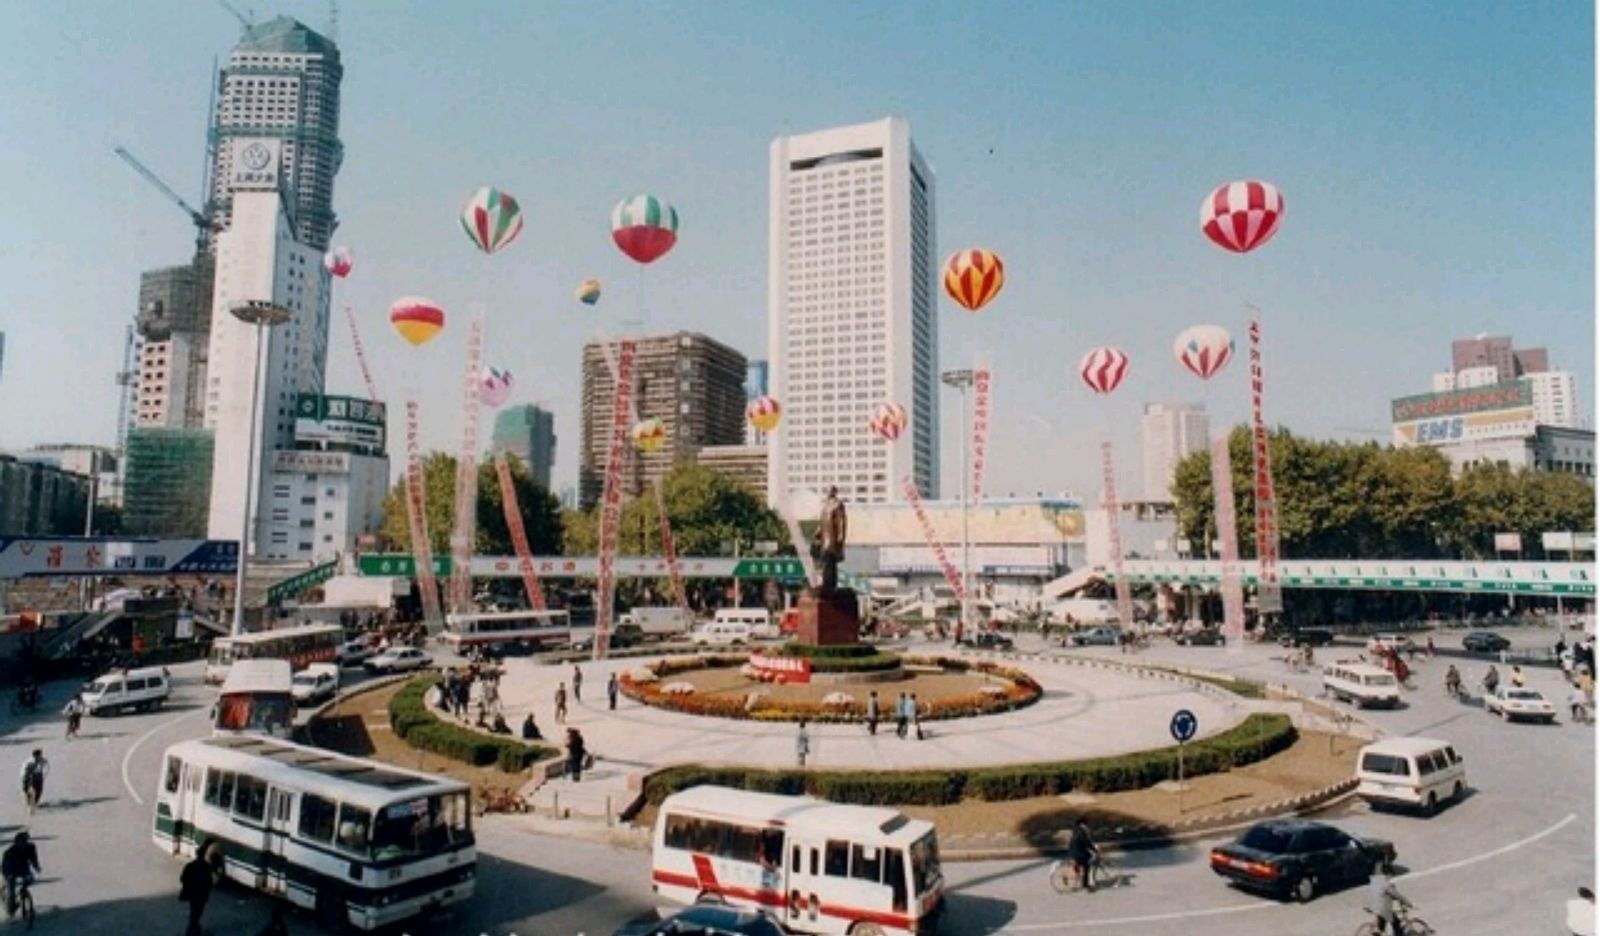 江苏老照片:90年代南京城市状况,生活场景!欢迎分享你的见解